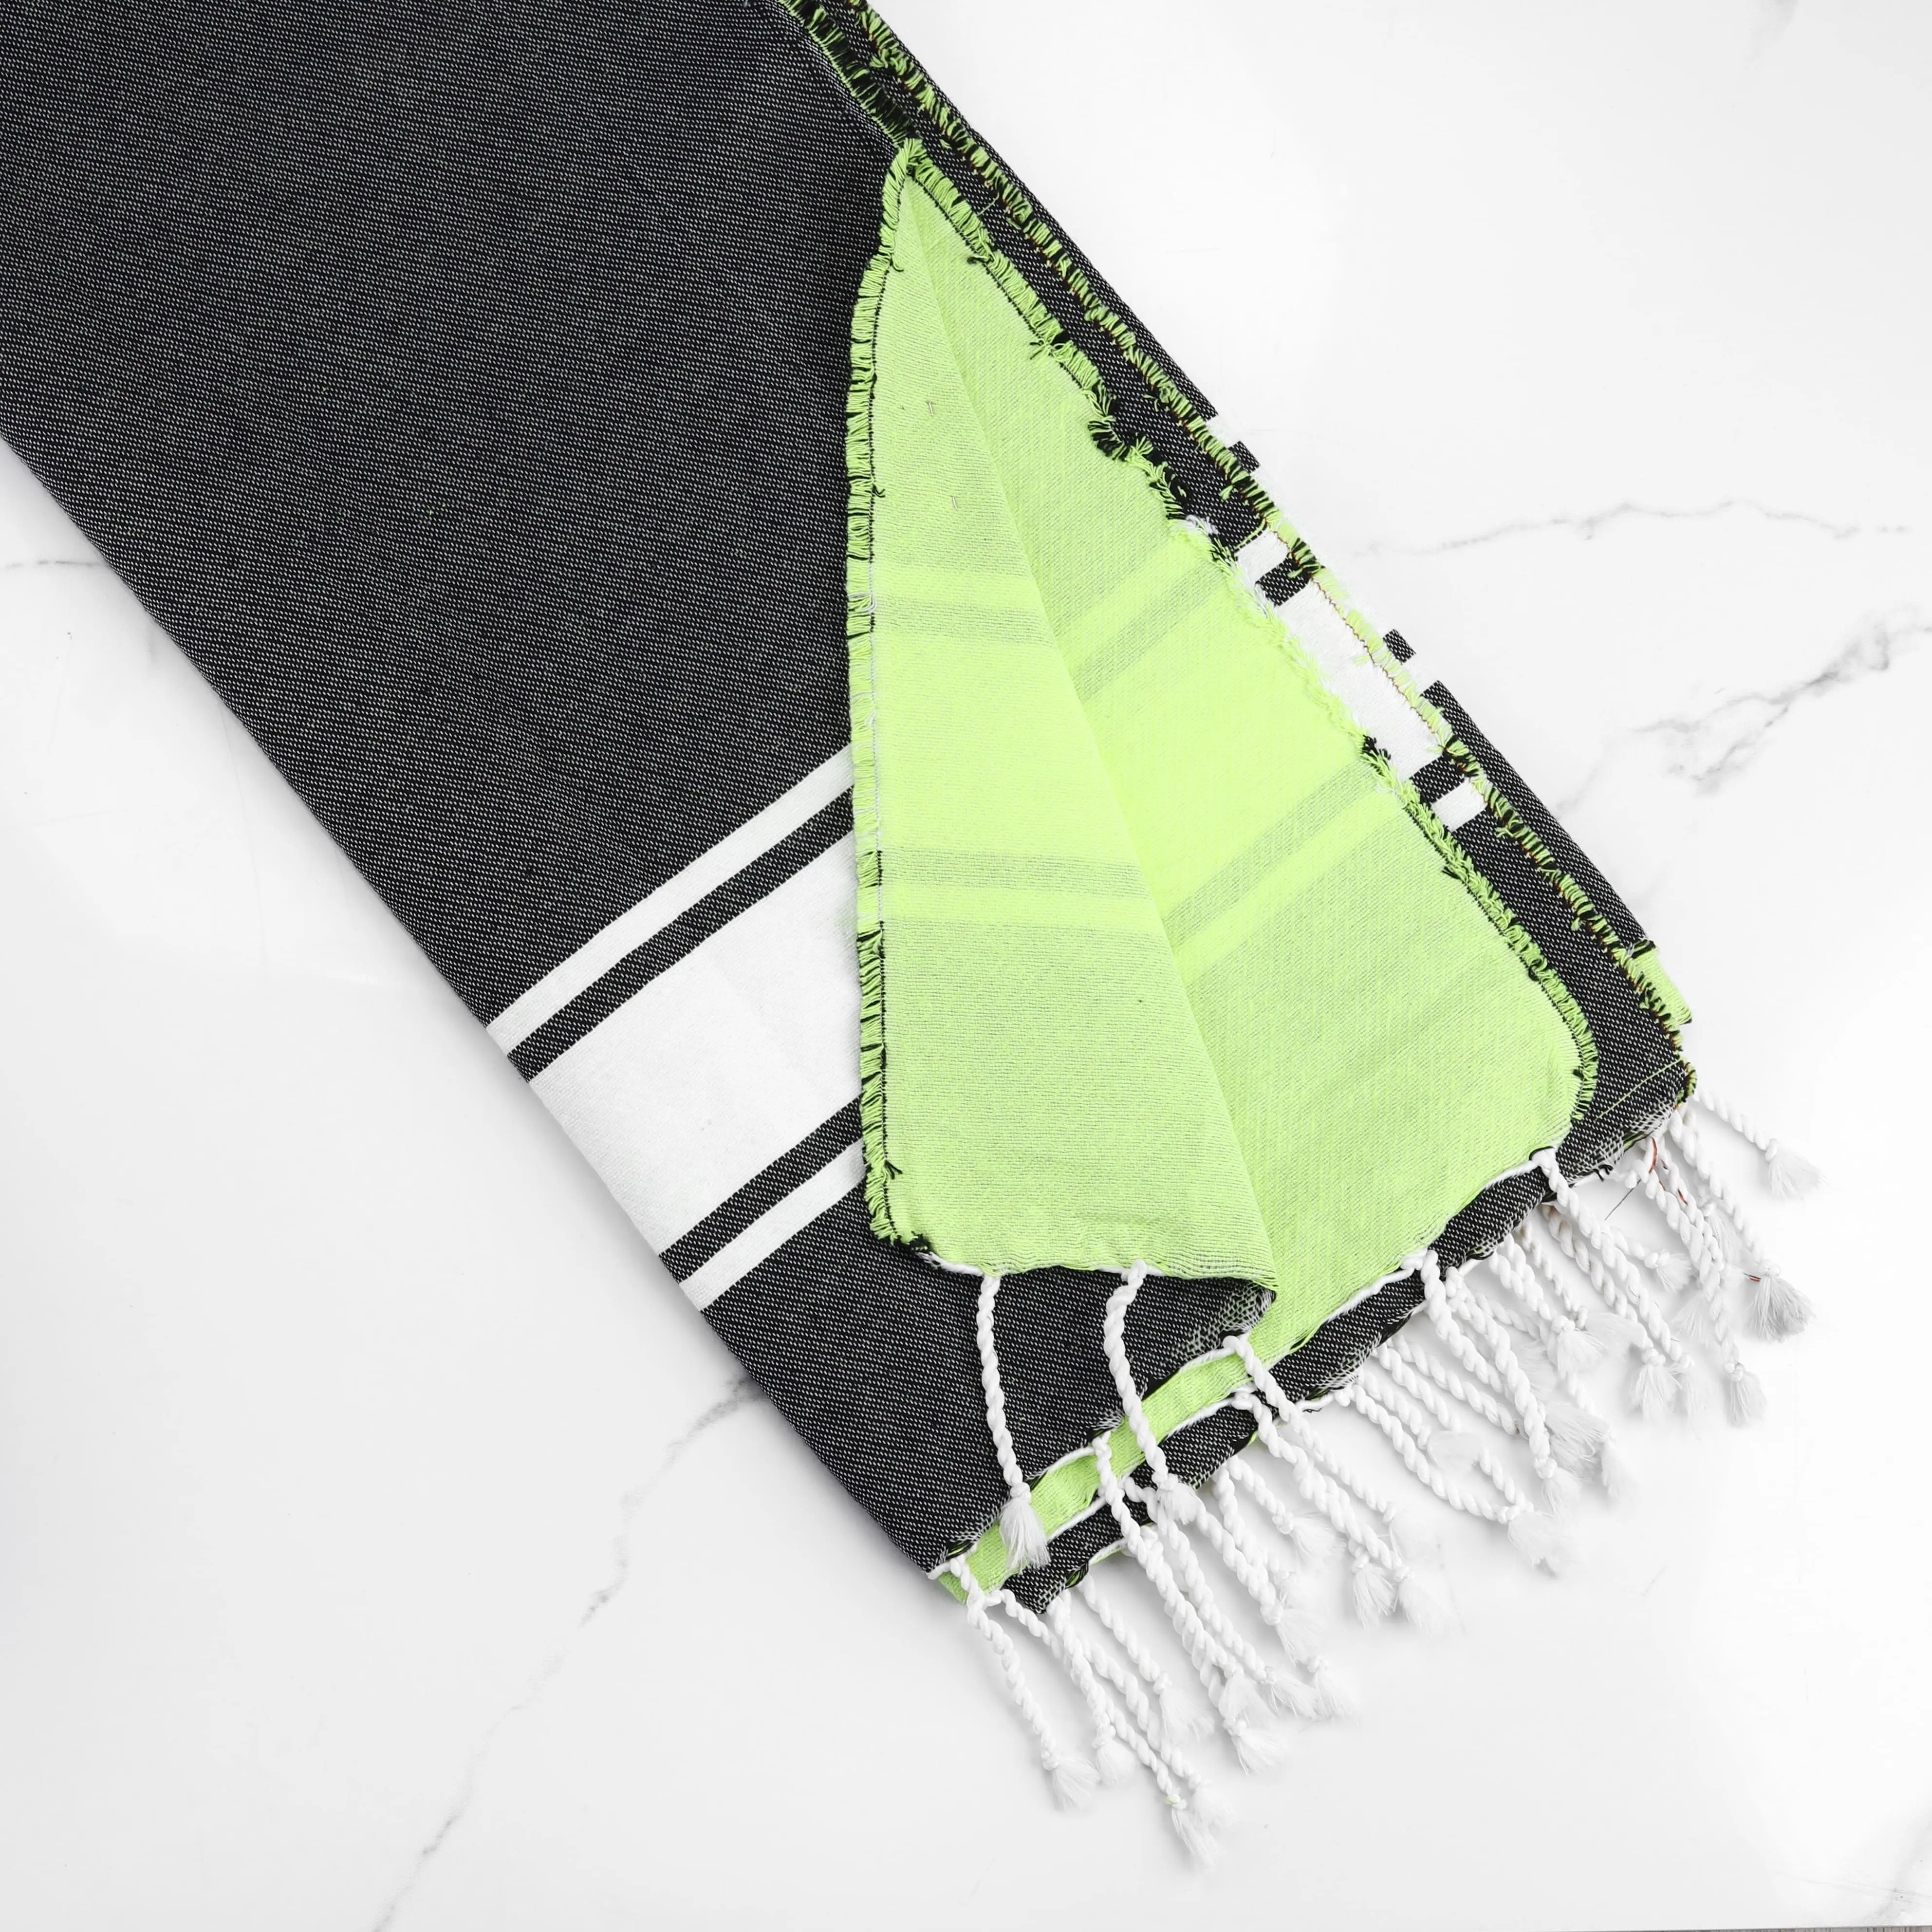 अनुकूलित रंग फ़ौटा | कम MOQ चंकी निट कंबल | तुर्की समुद्र तट तौलिया सार बुना हुआ सादा 100% कार्बनिक कपास टीएन आर्टिस्रो